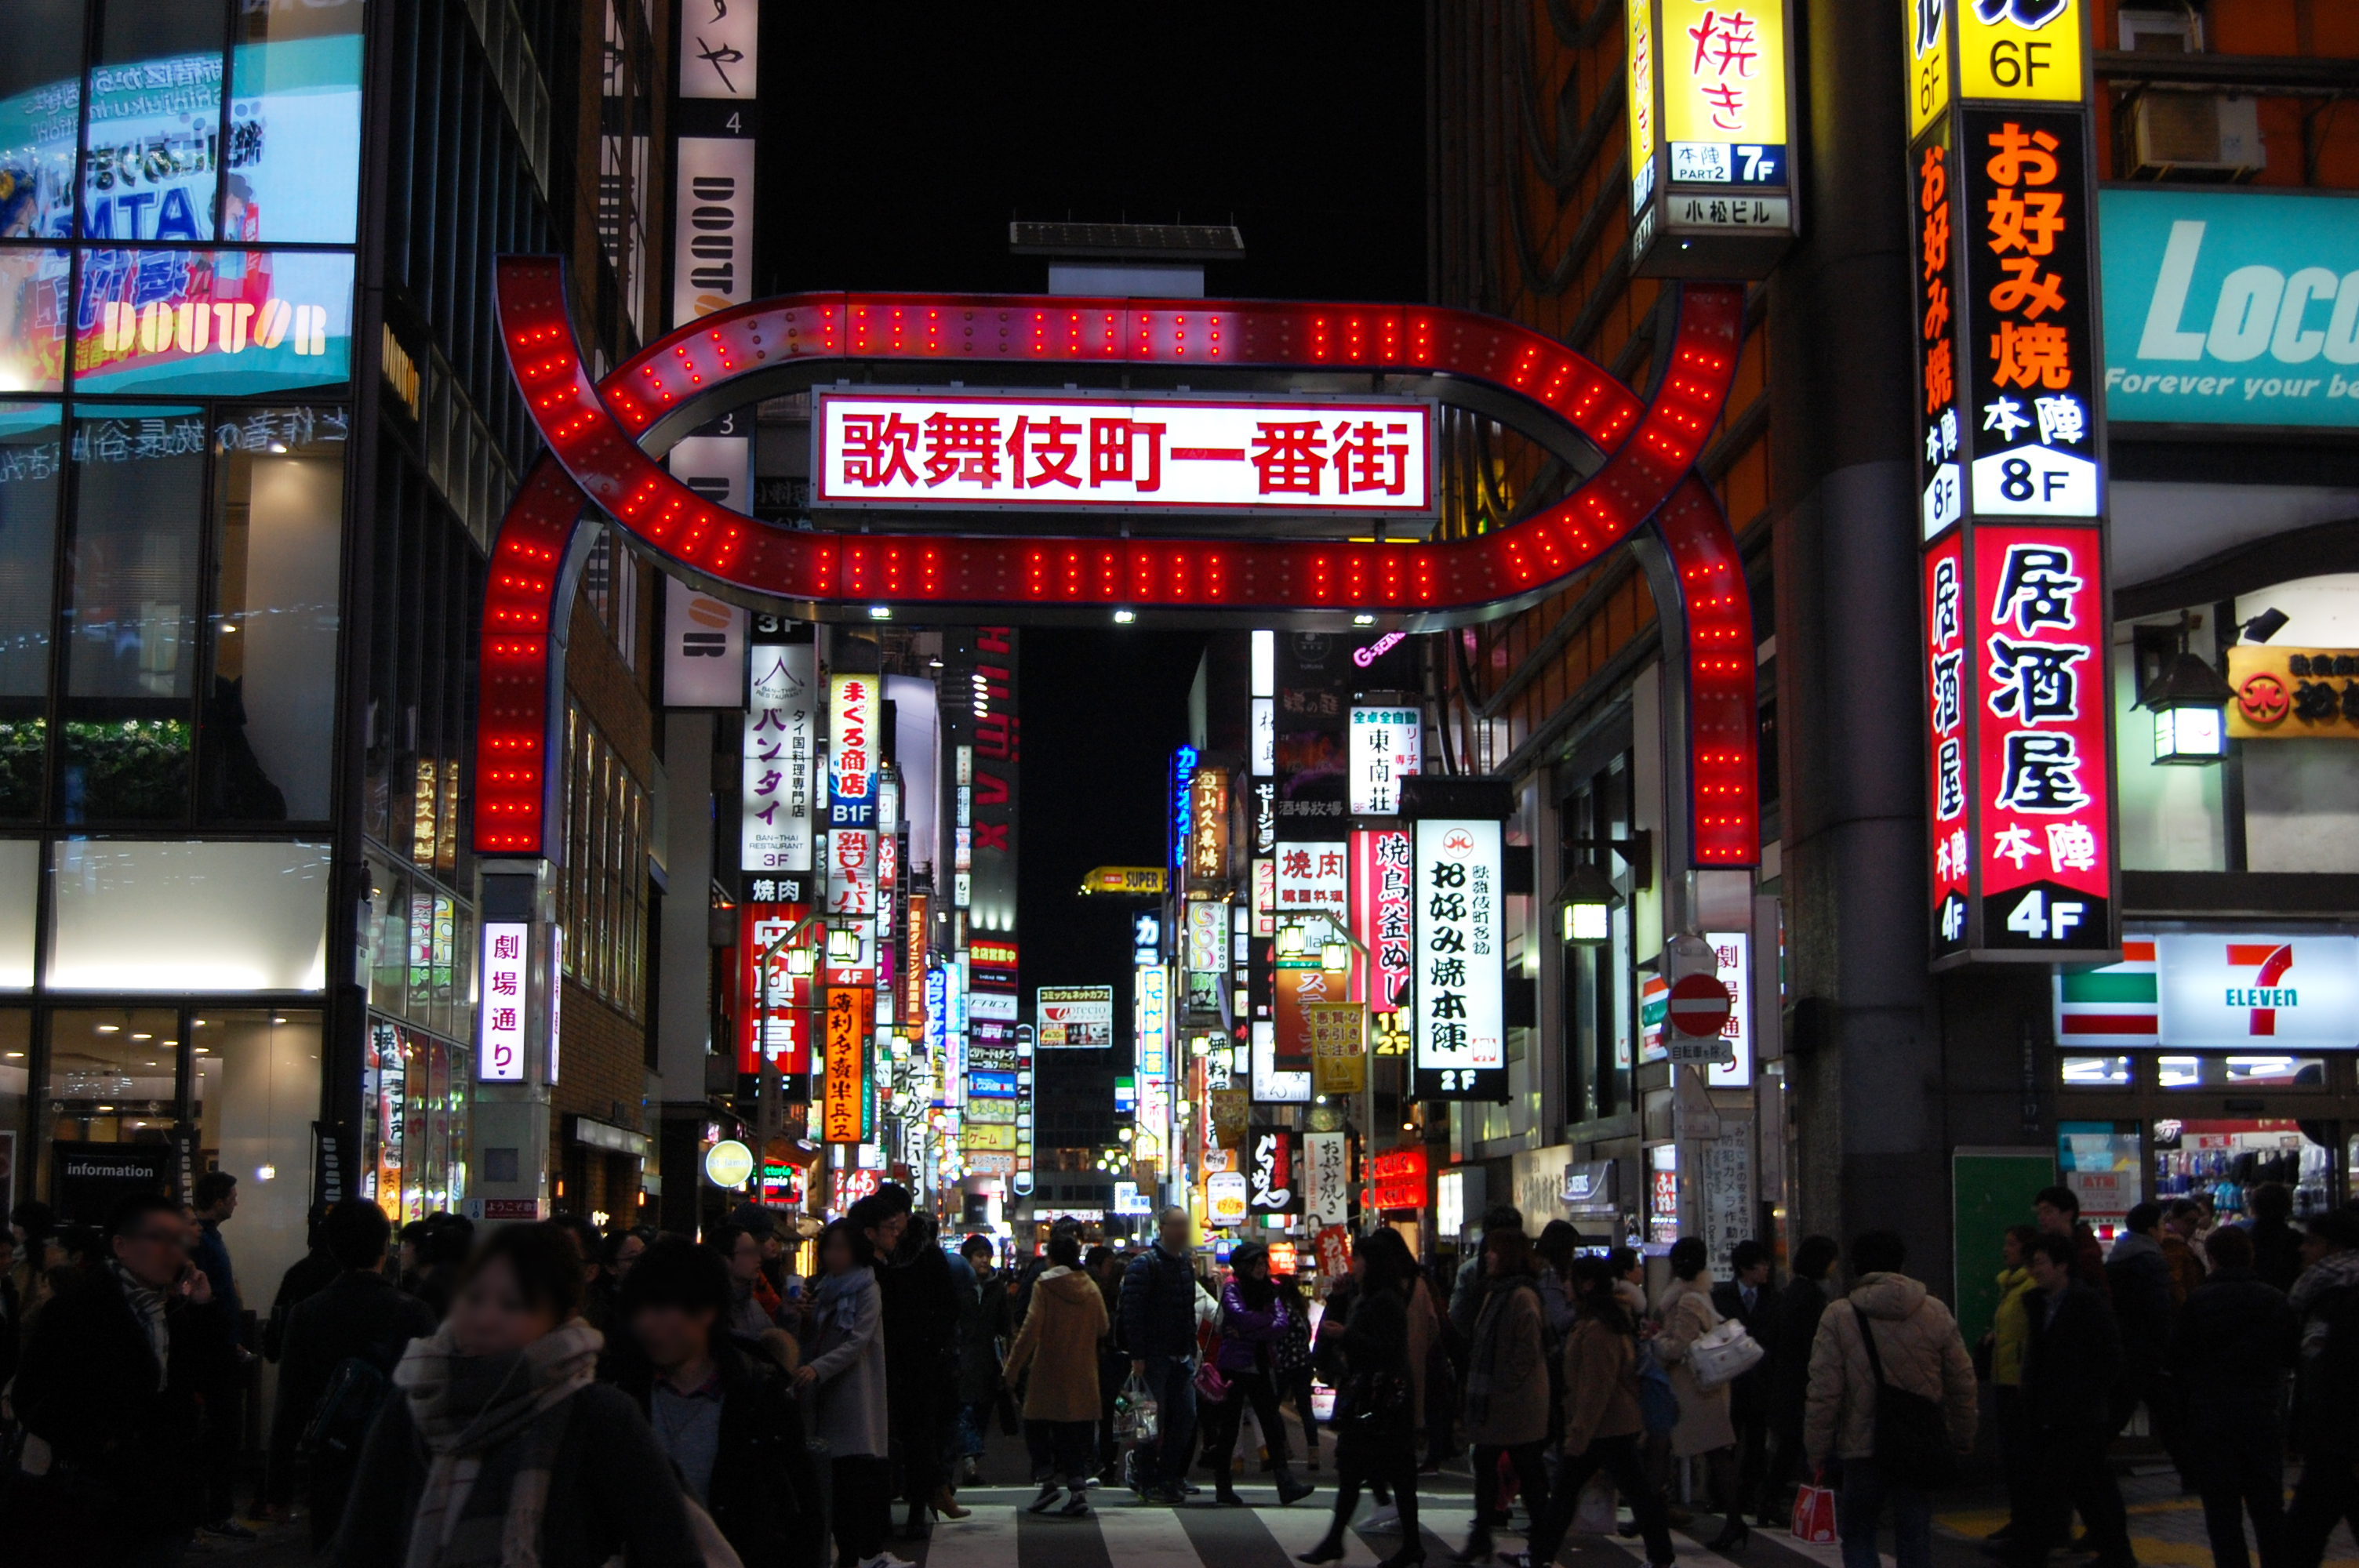 歌舞伎町の入口看板03 フリー素材ドットコム